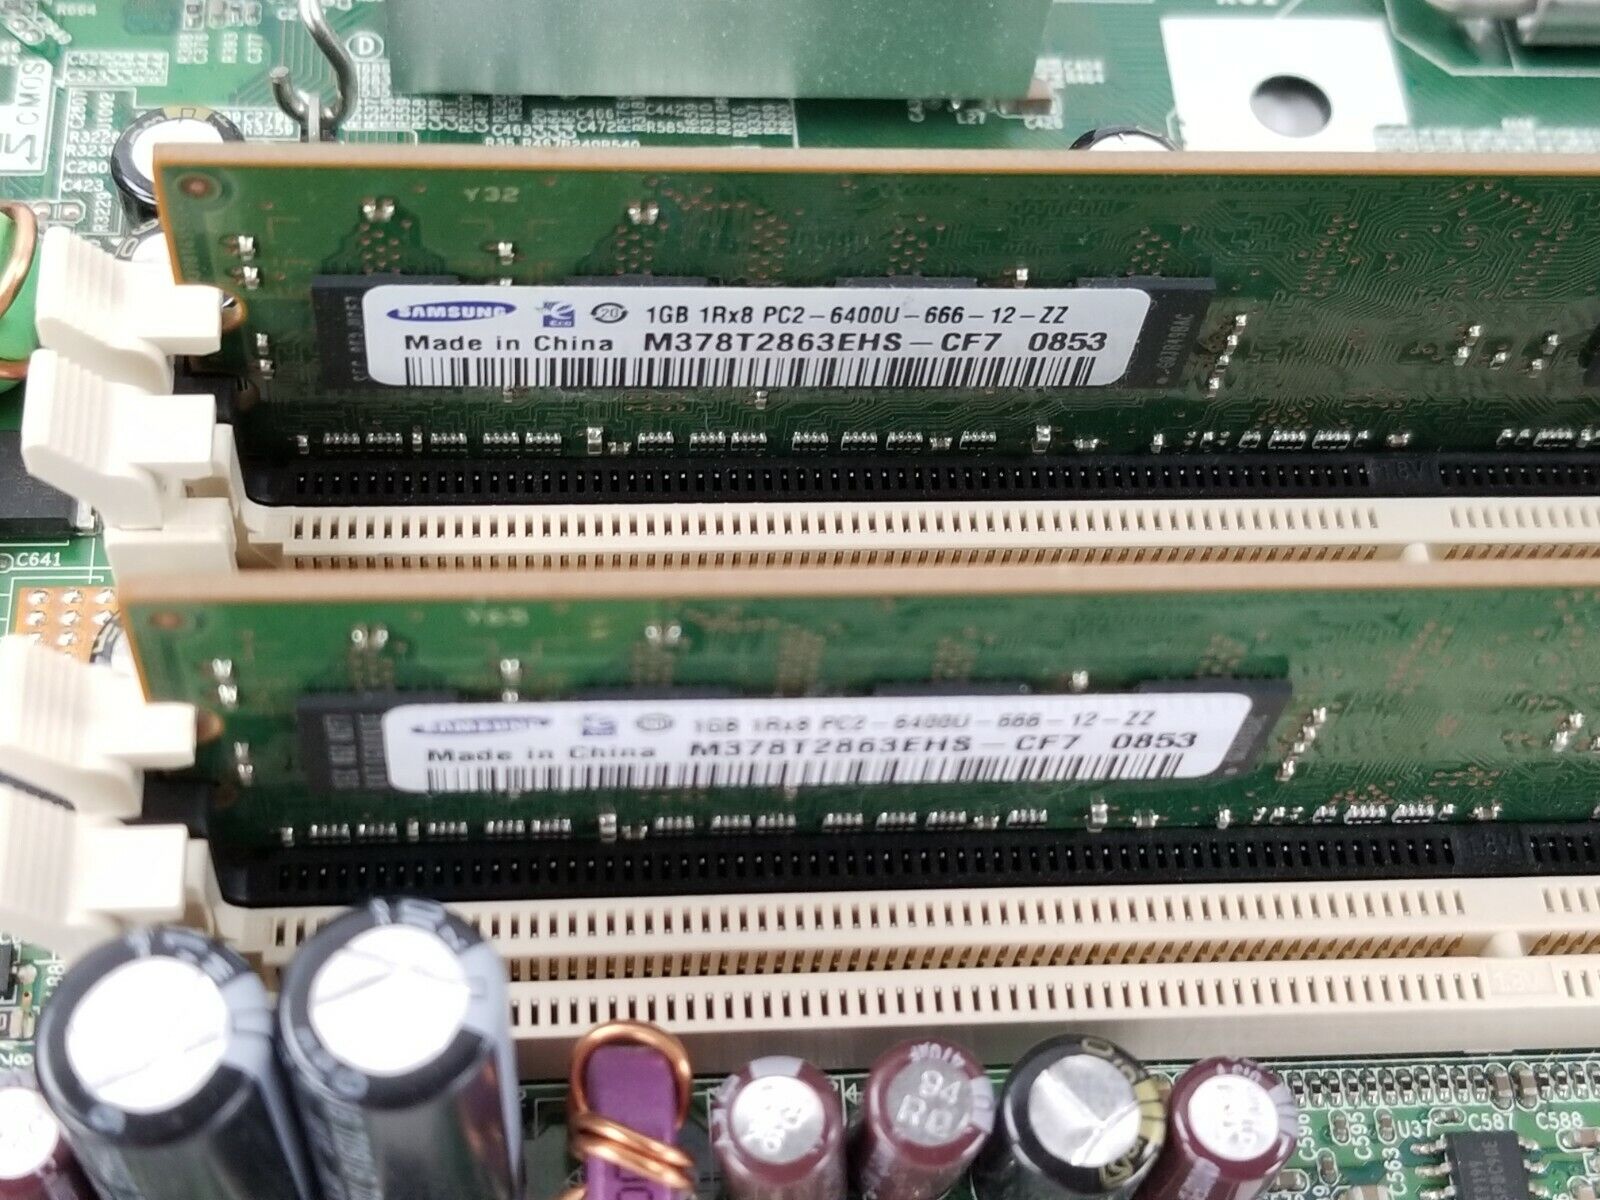 HP 450667-001 Compaq DCS5800 SFF Motherboard Intel Core 2 Duo E7400 2.8GHz 2GB R